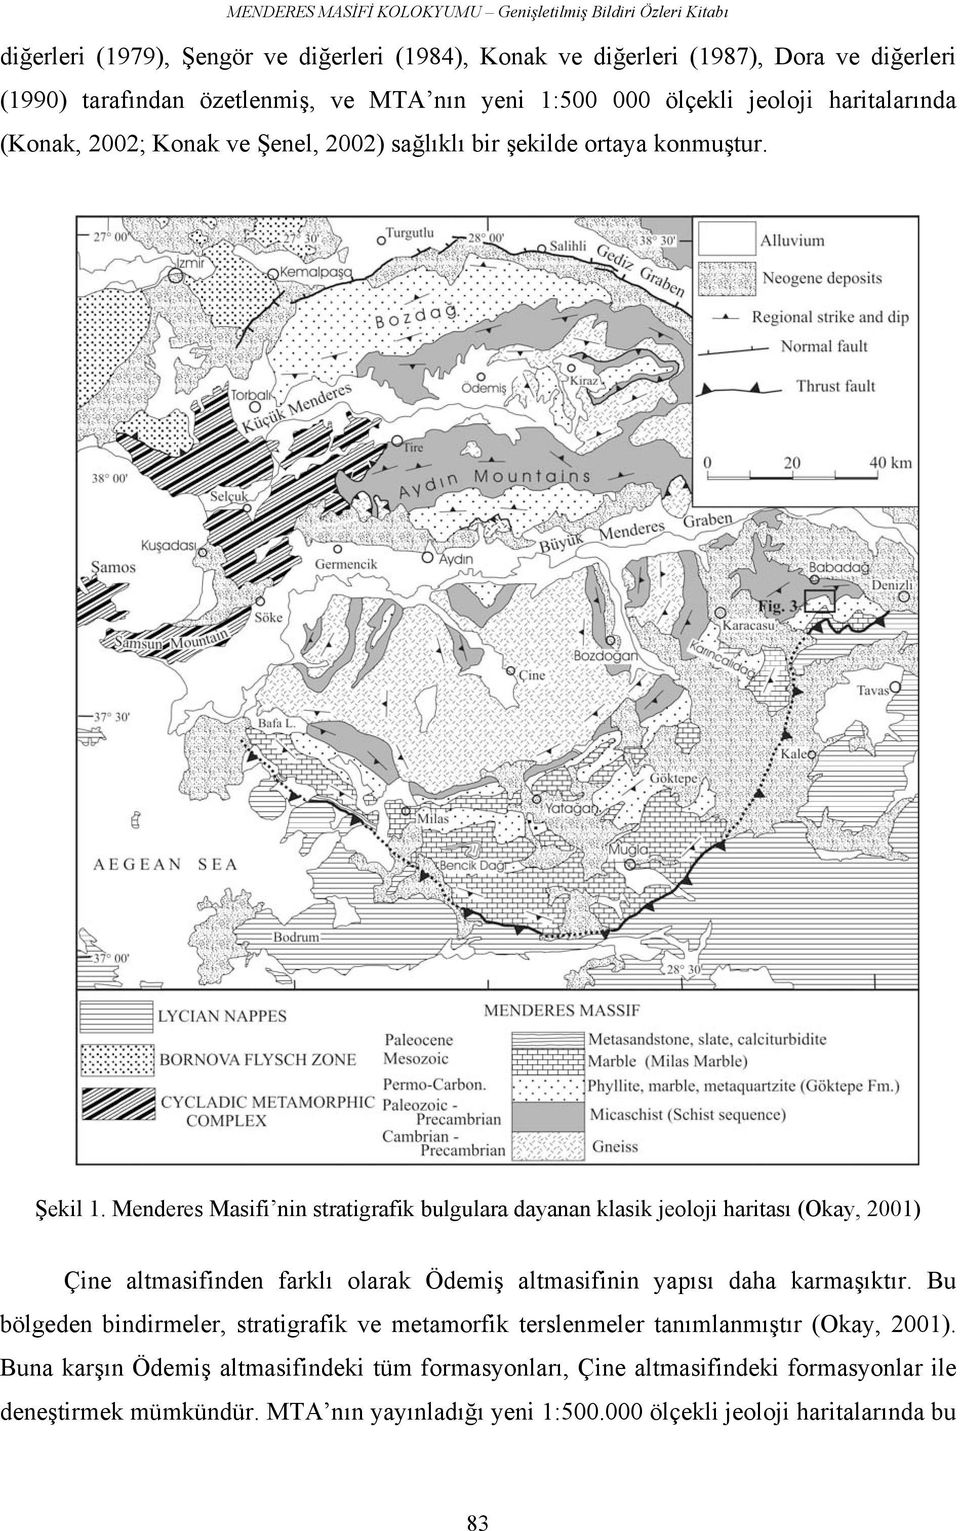 Menderes Masifi nin stratigrafik bulgulara dayanan klasik jeoloji haritası (Okay, 2001) Çine altmasifinden farklı olarak Ödemiş altmasifinin yapısı daha karmaşıktır.